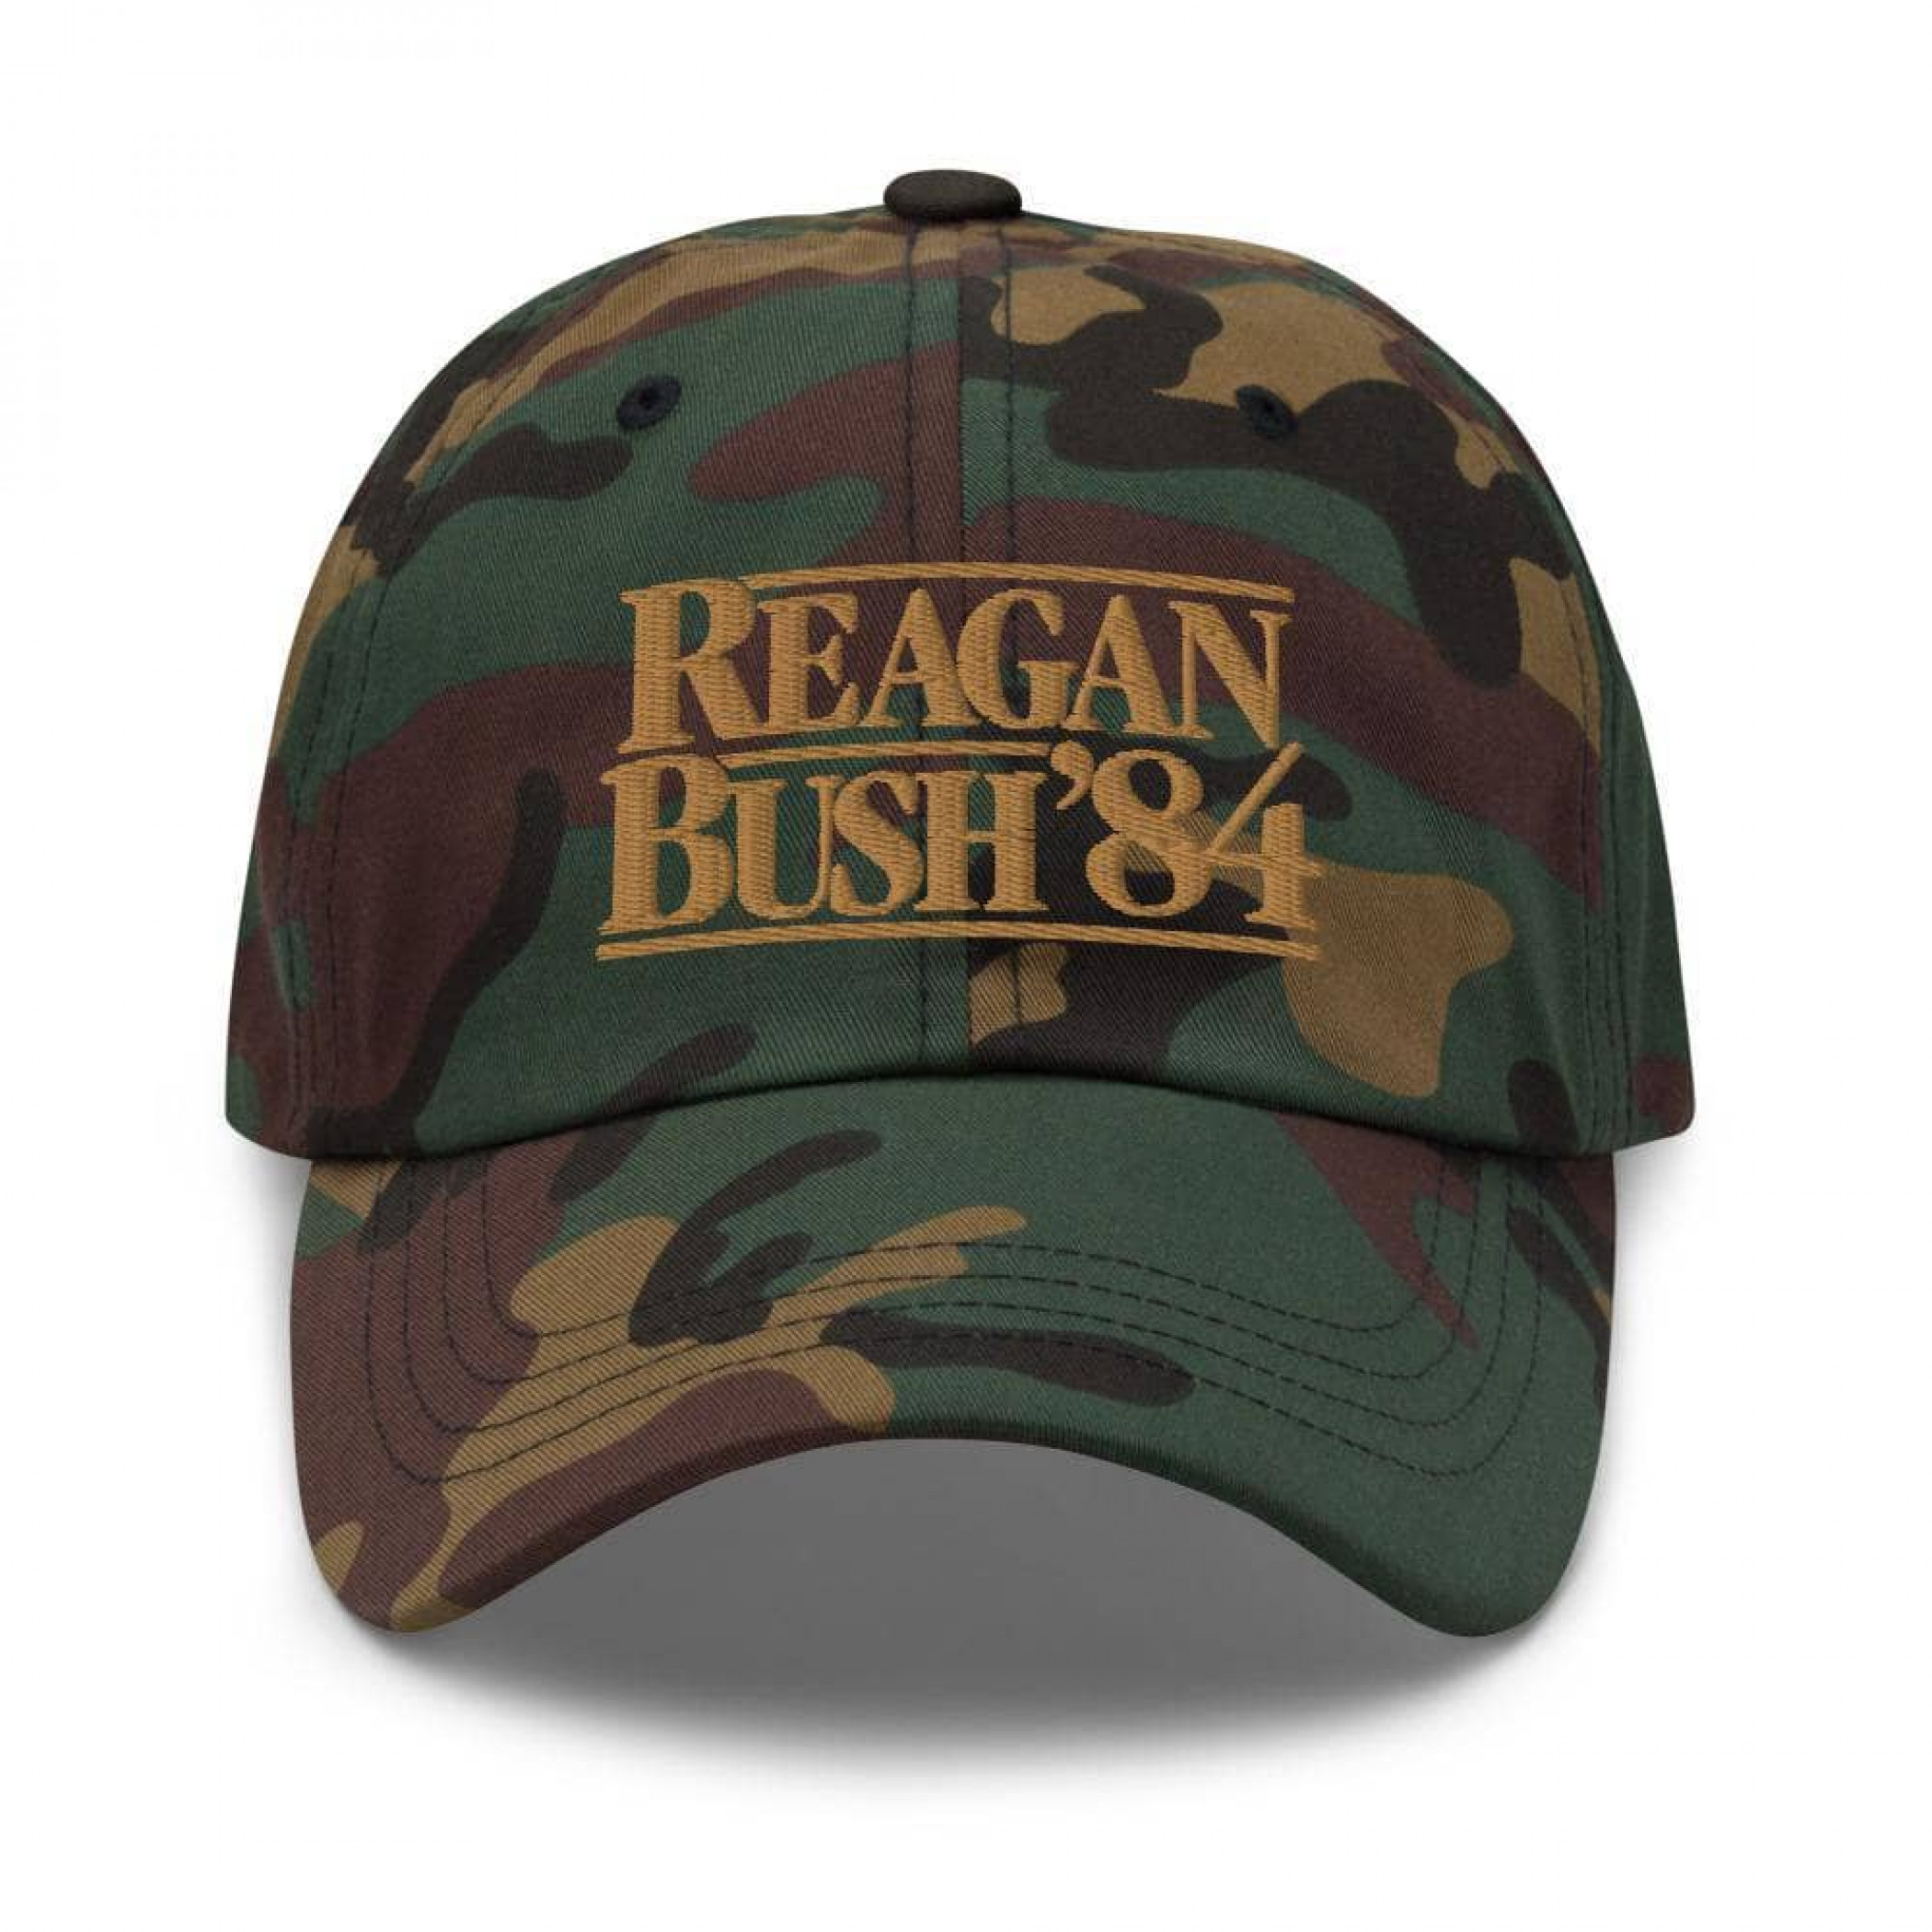 Reagan Bush 84 Camo Dad Hat